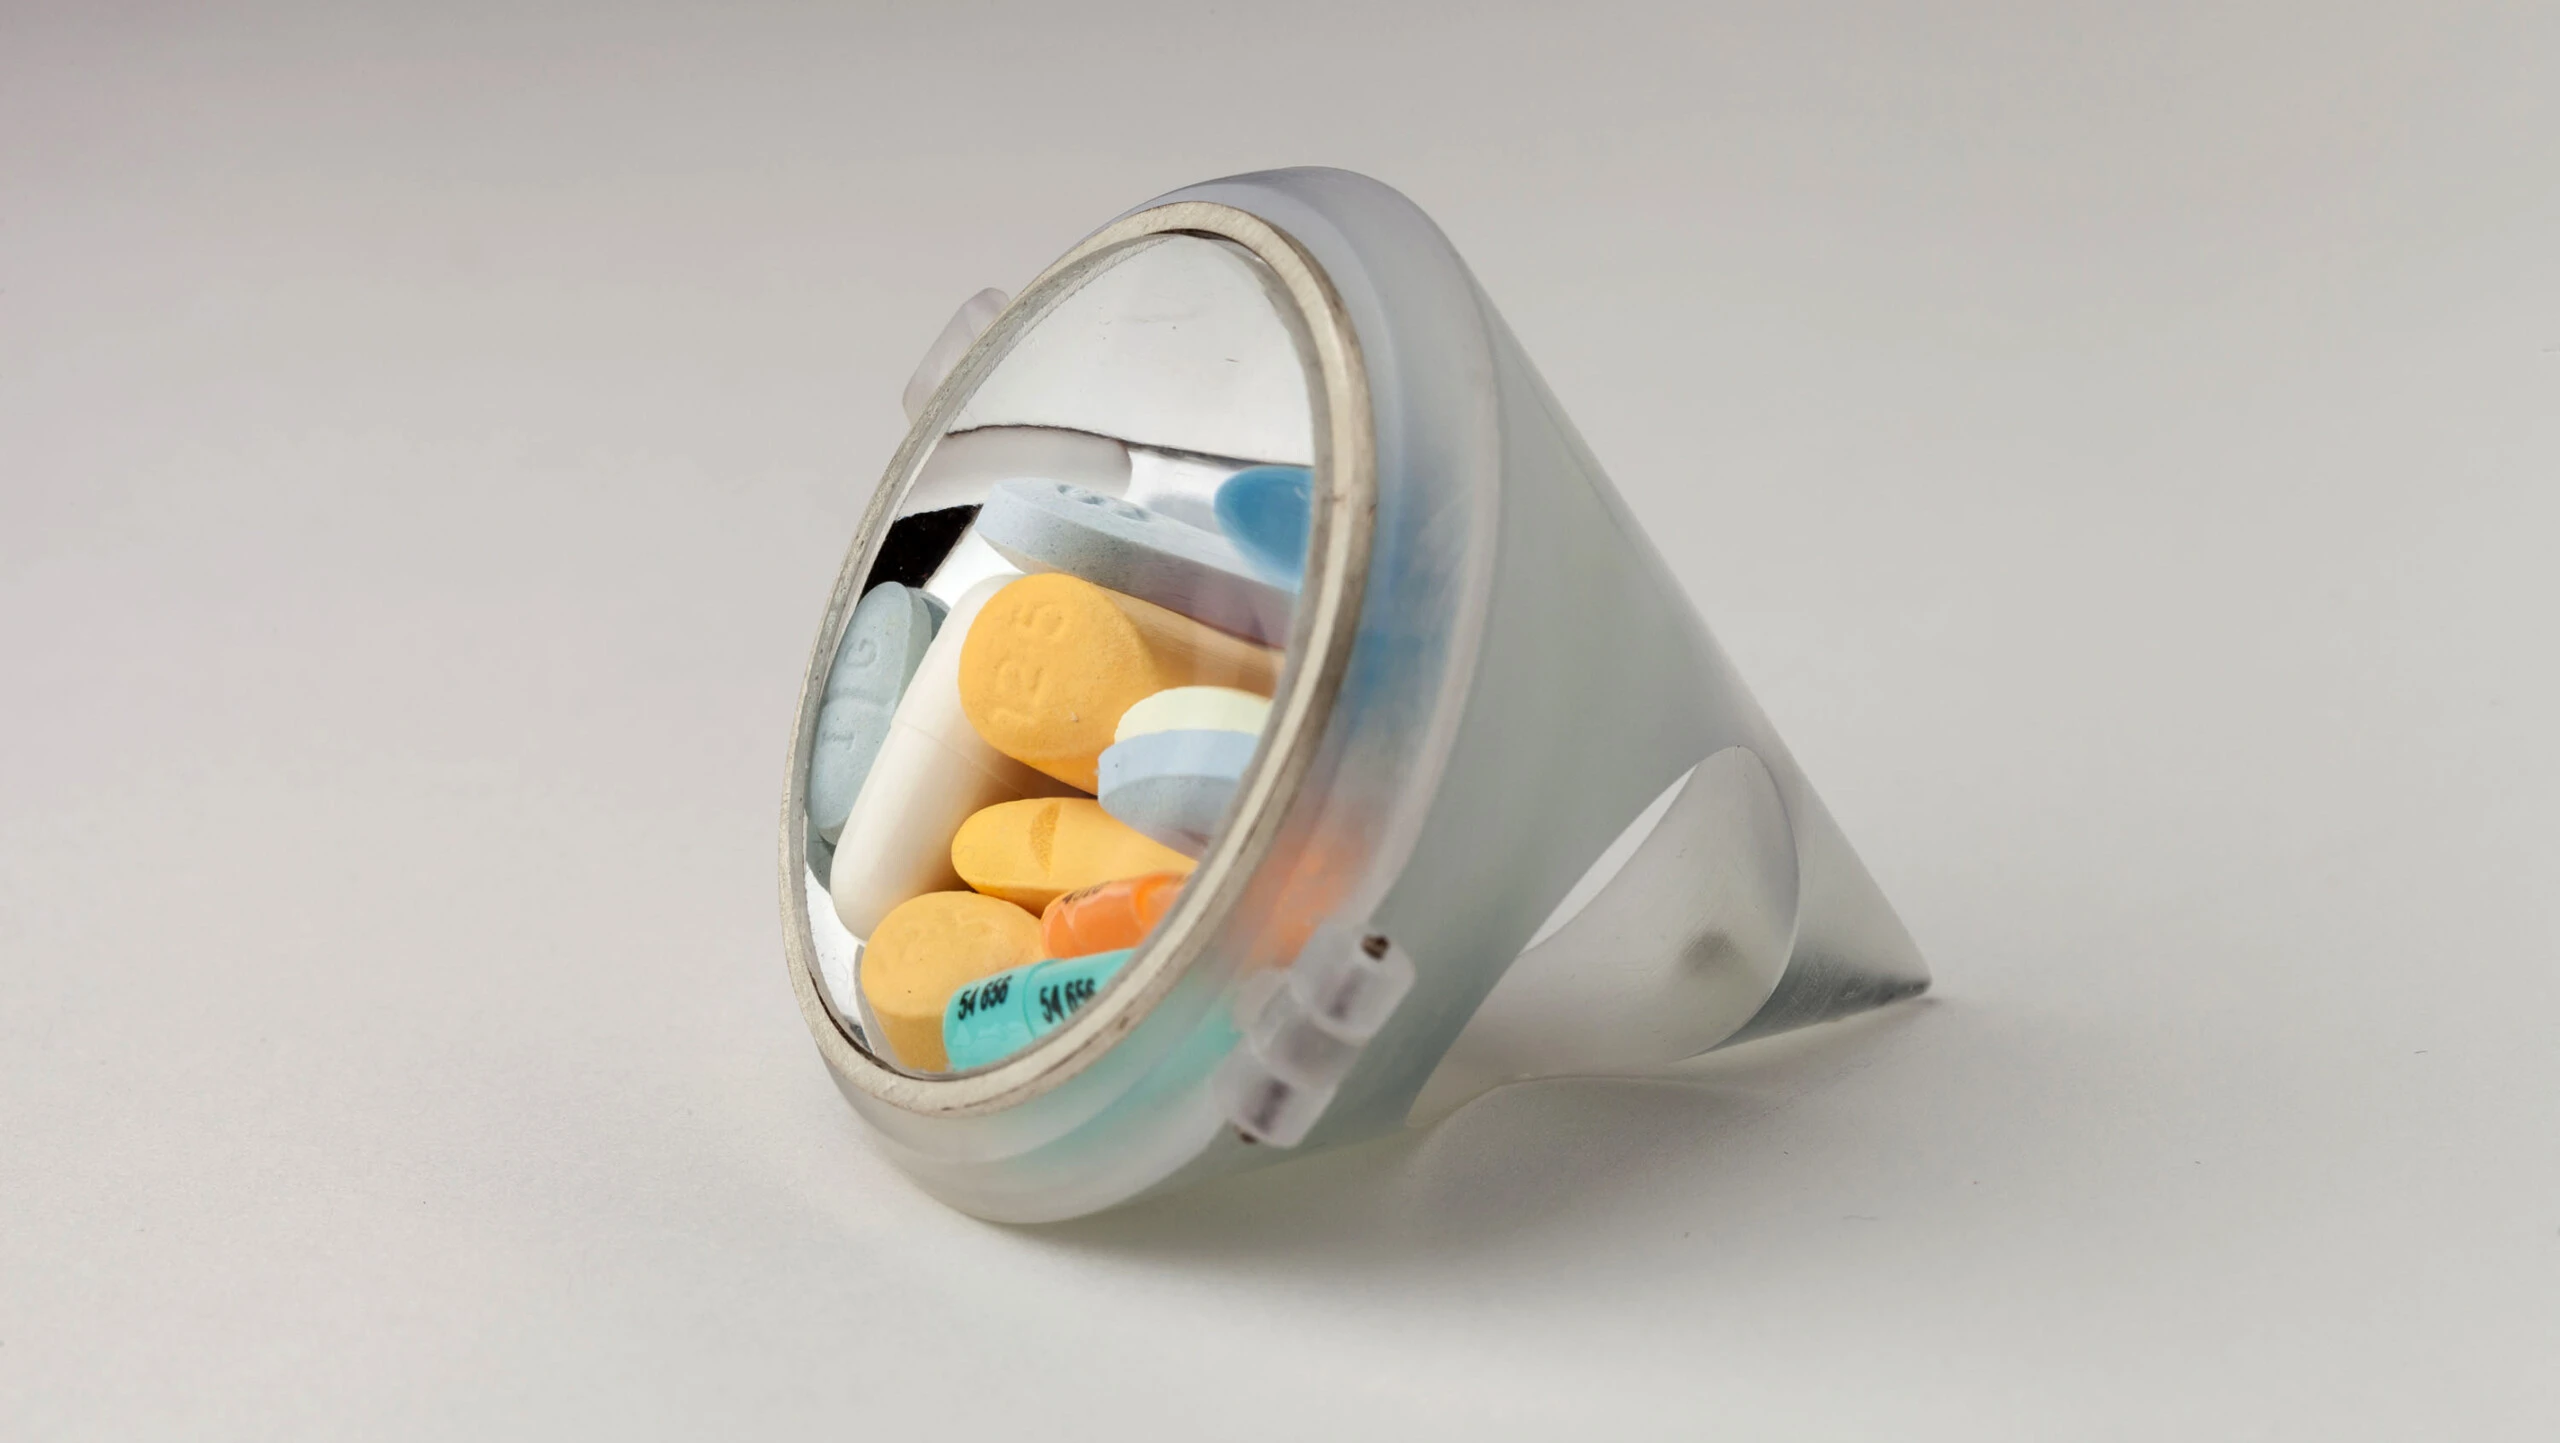 An art piece showing pills inside of a circular prism